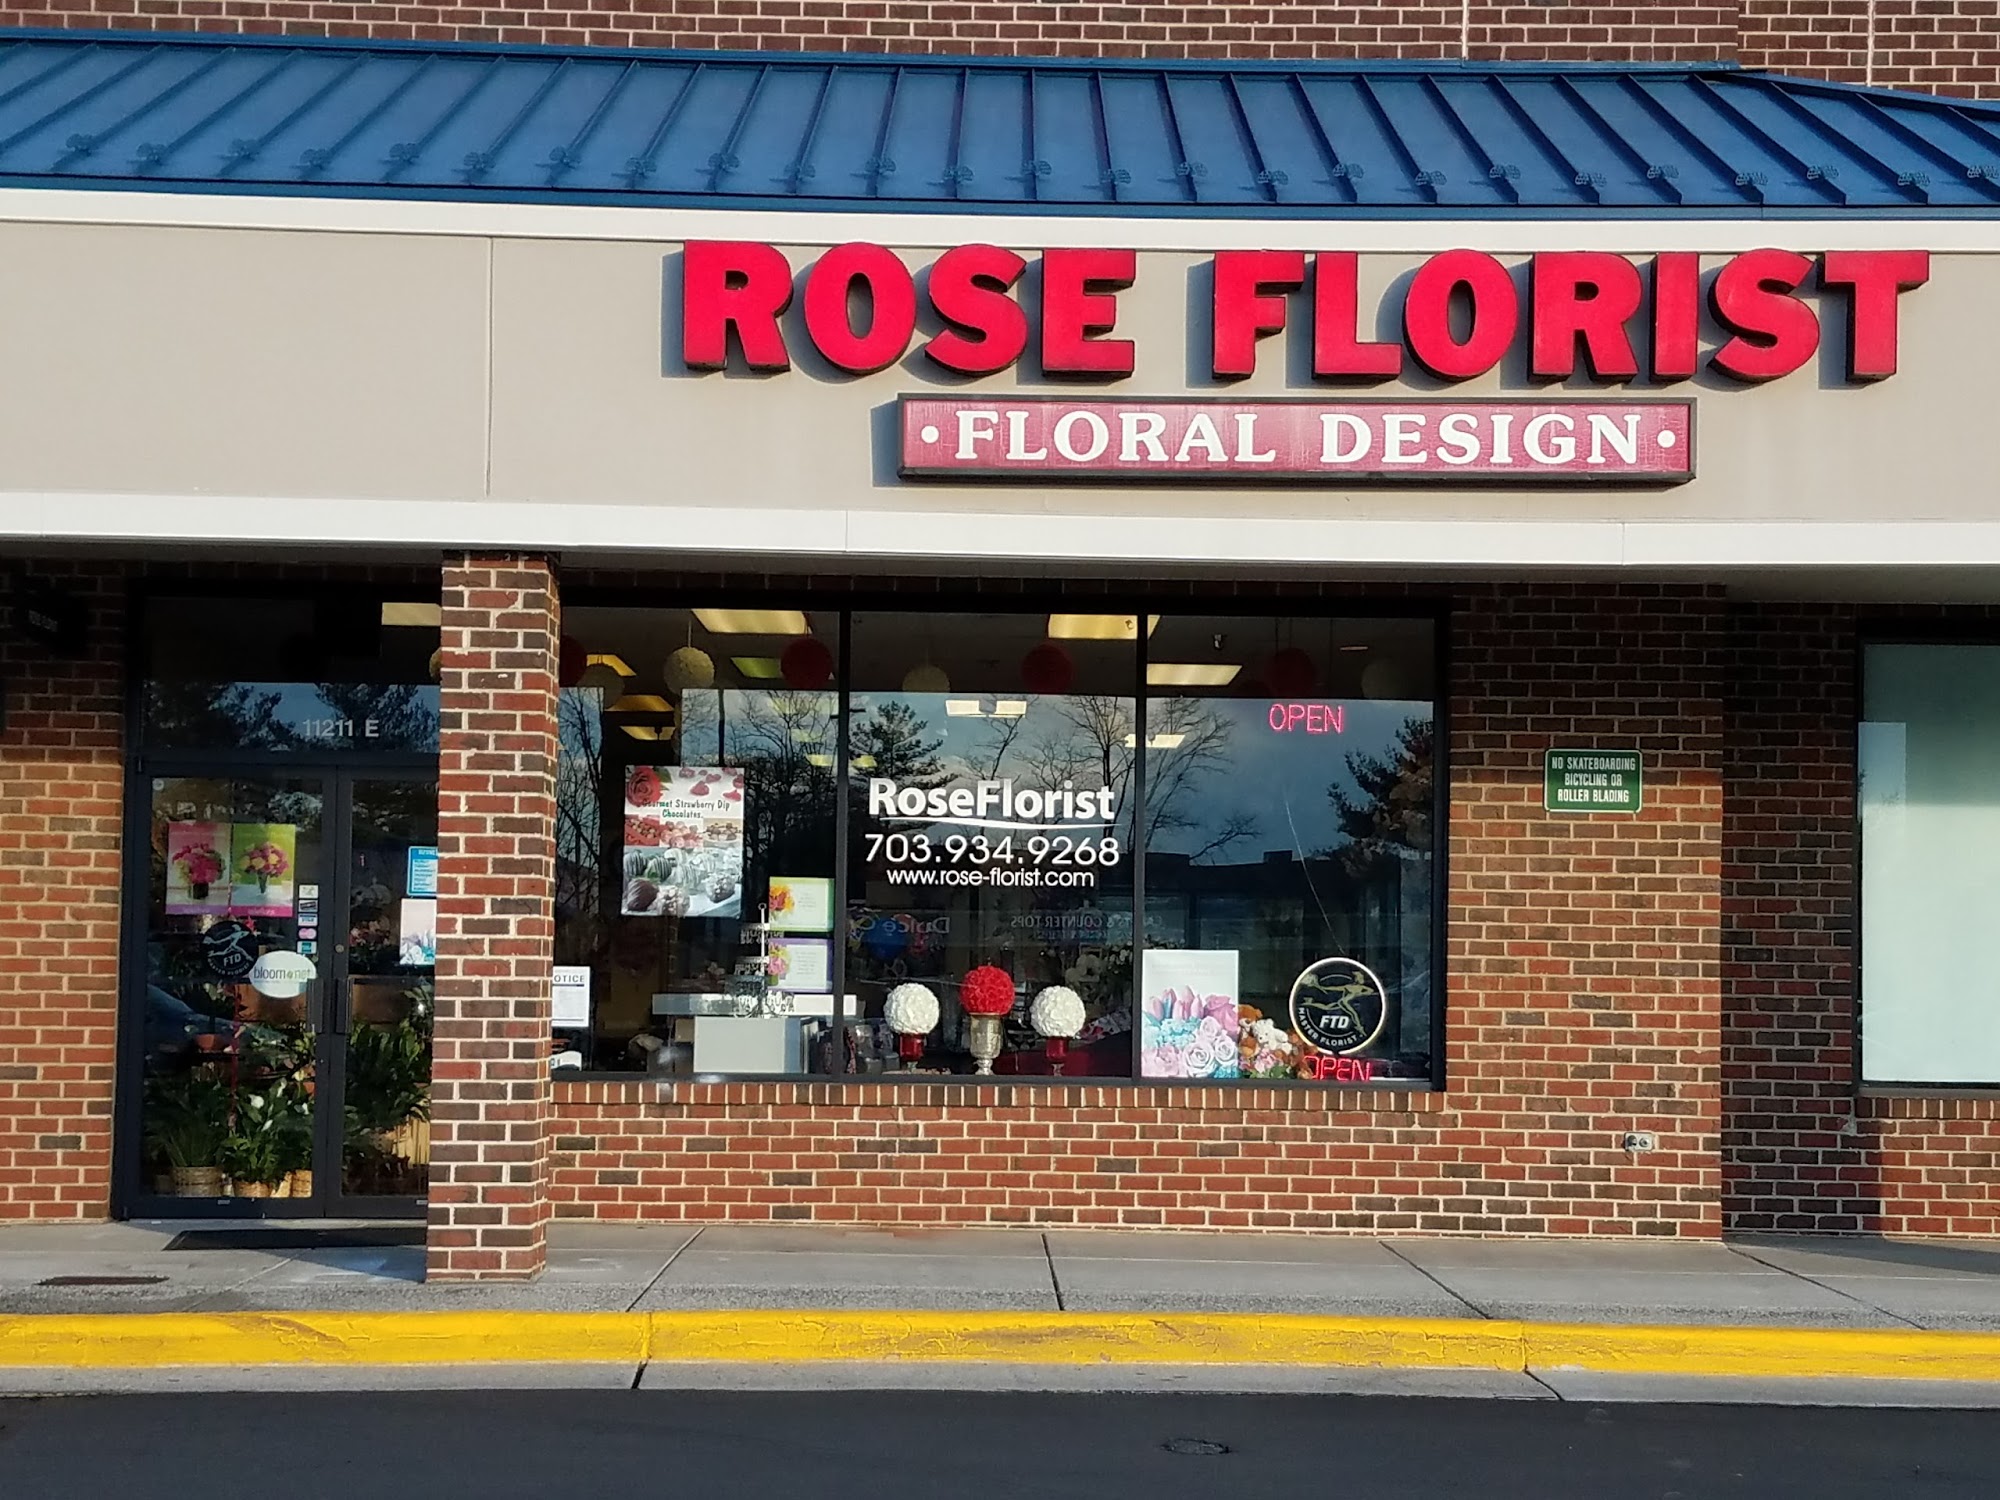 Rose Florist & Flower Delivery